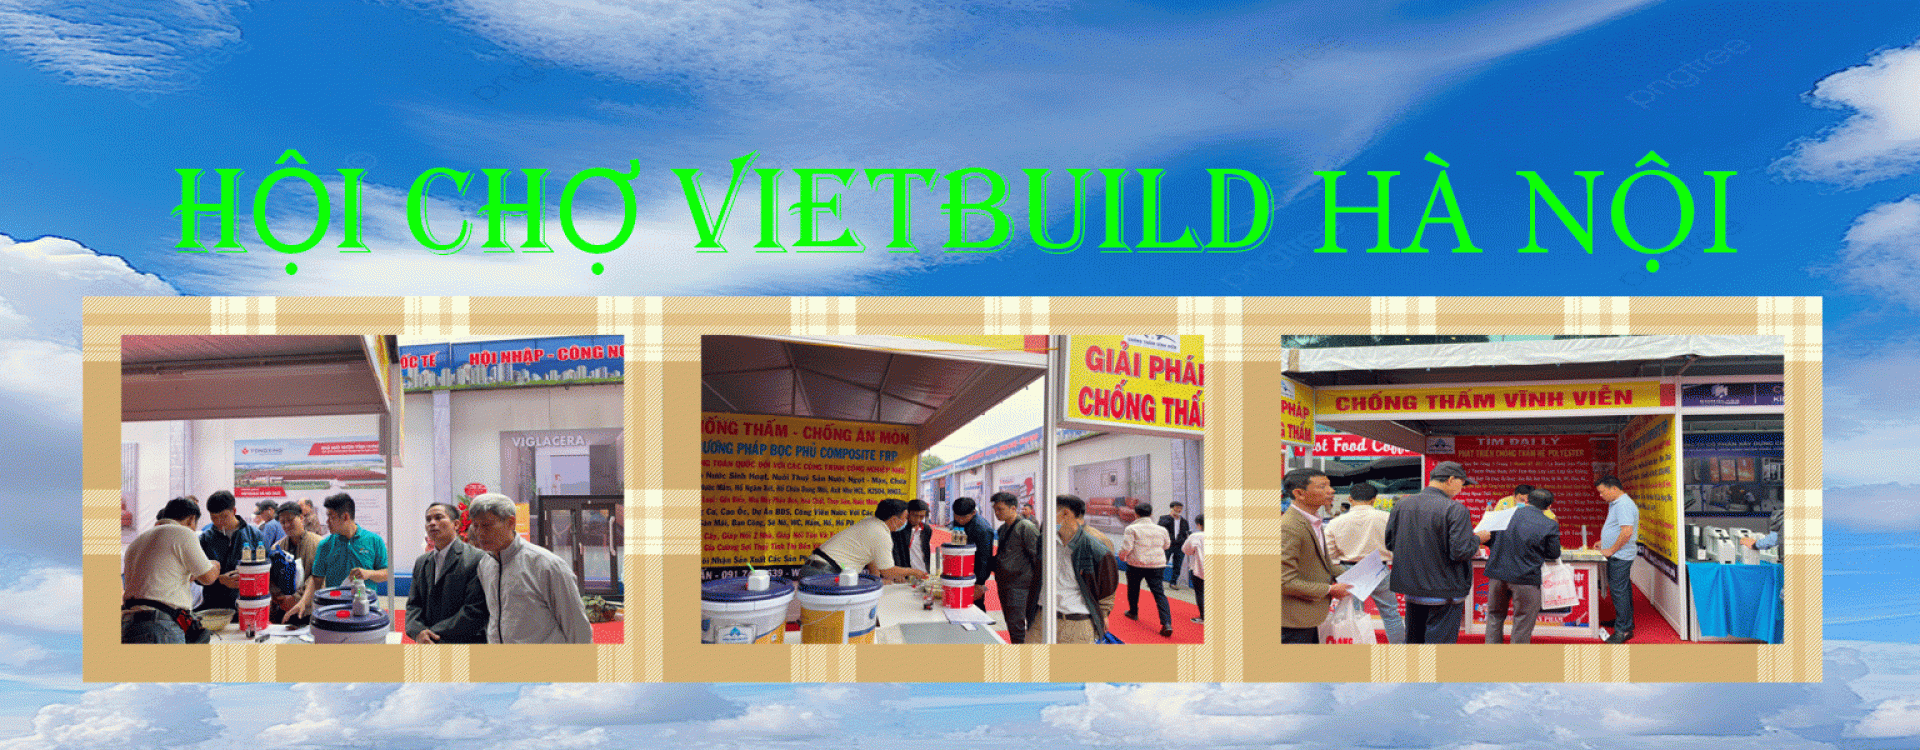 Chống thấm chống nóng tại hội chợ Vietbuild Hà Nội composite FRP chống ăn mòn